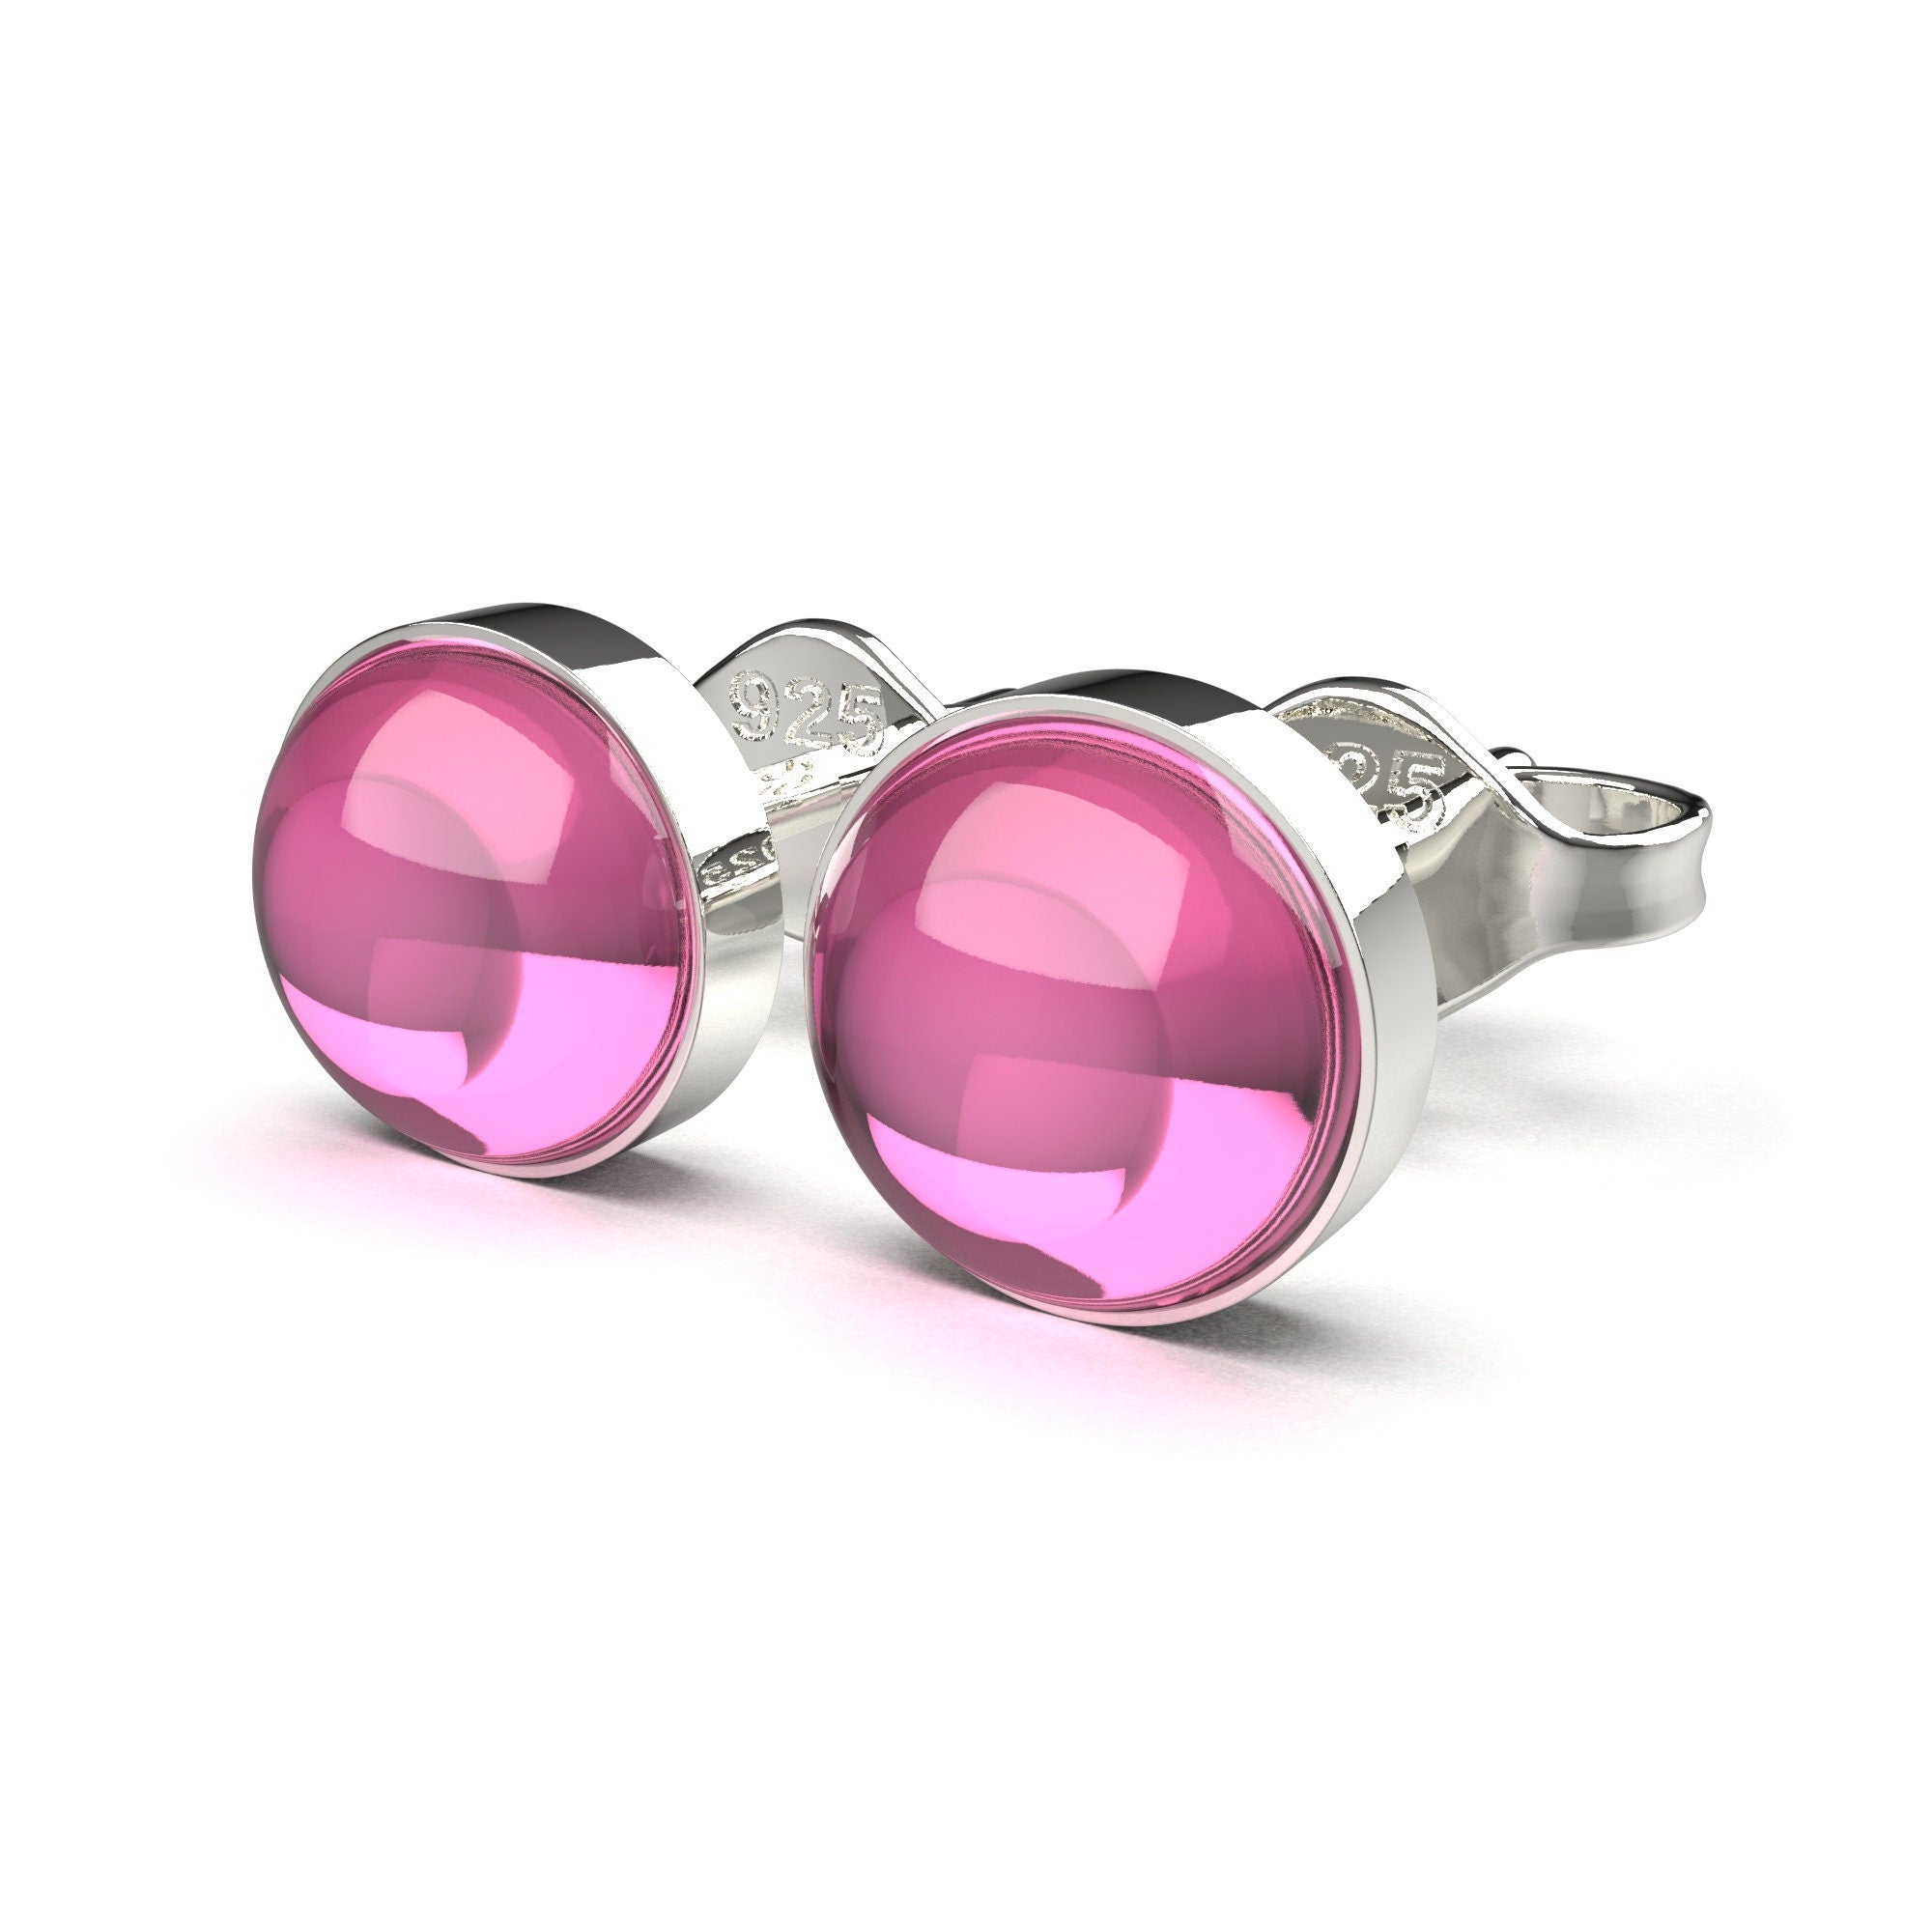 Pink Sapphire Gemstone Stud Earrings - Melanie Golden Jewelry - Earrings, stud, stud earrings